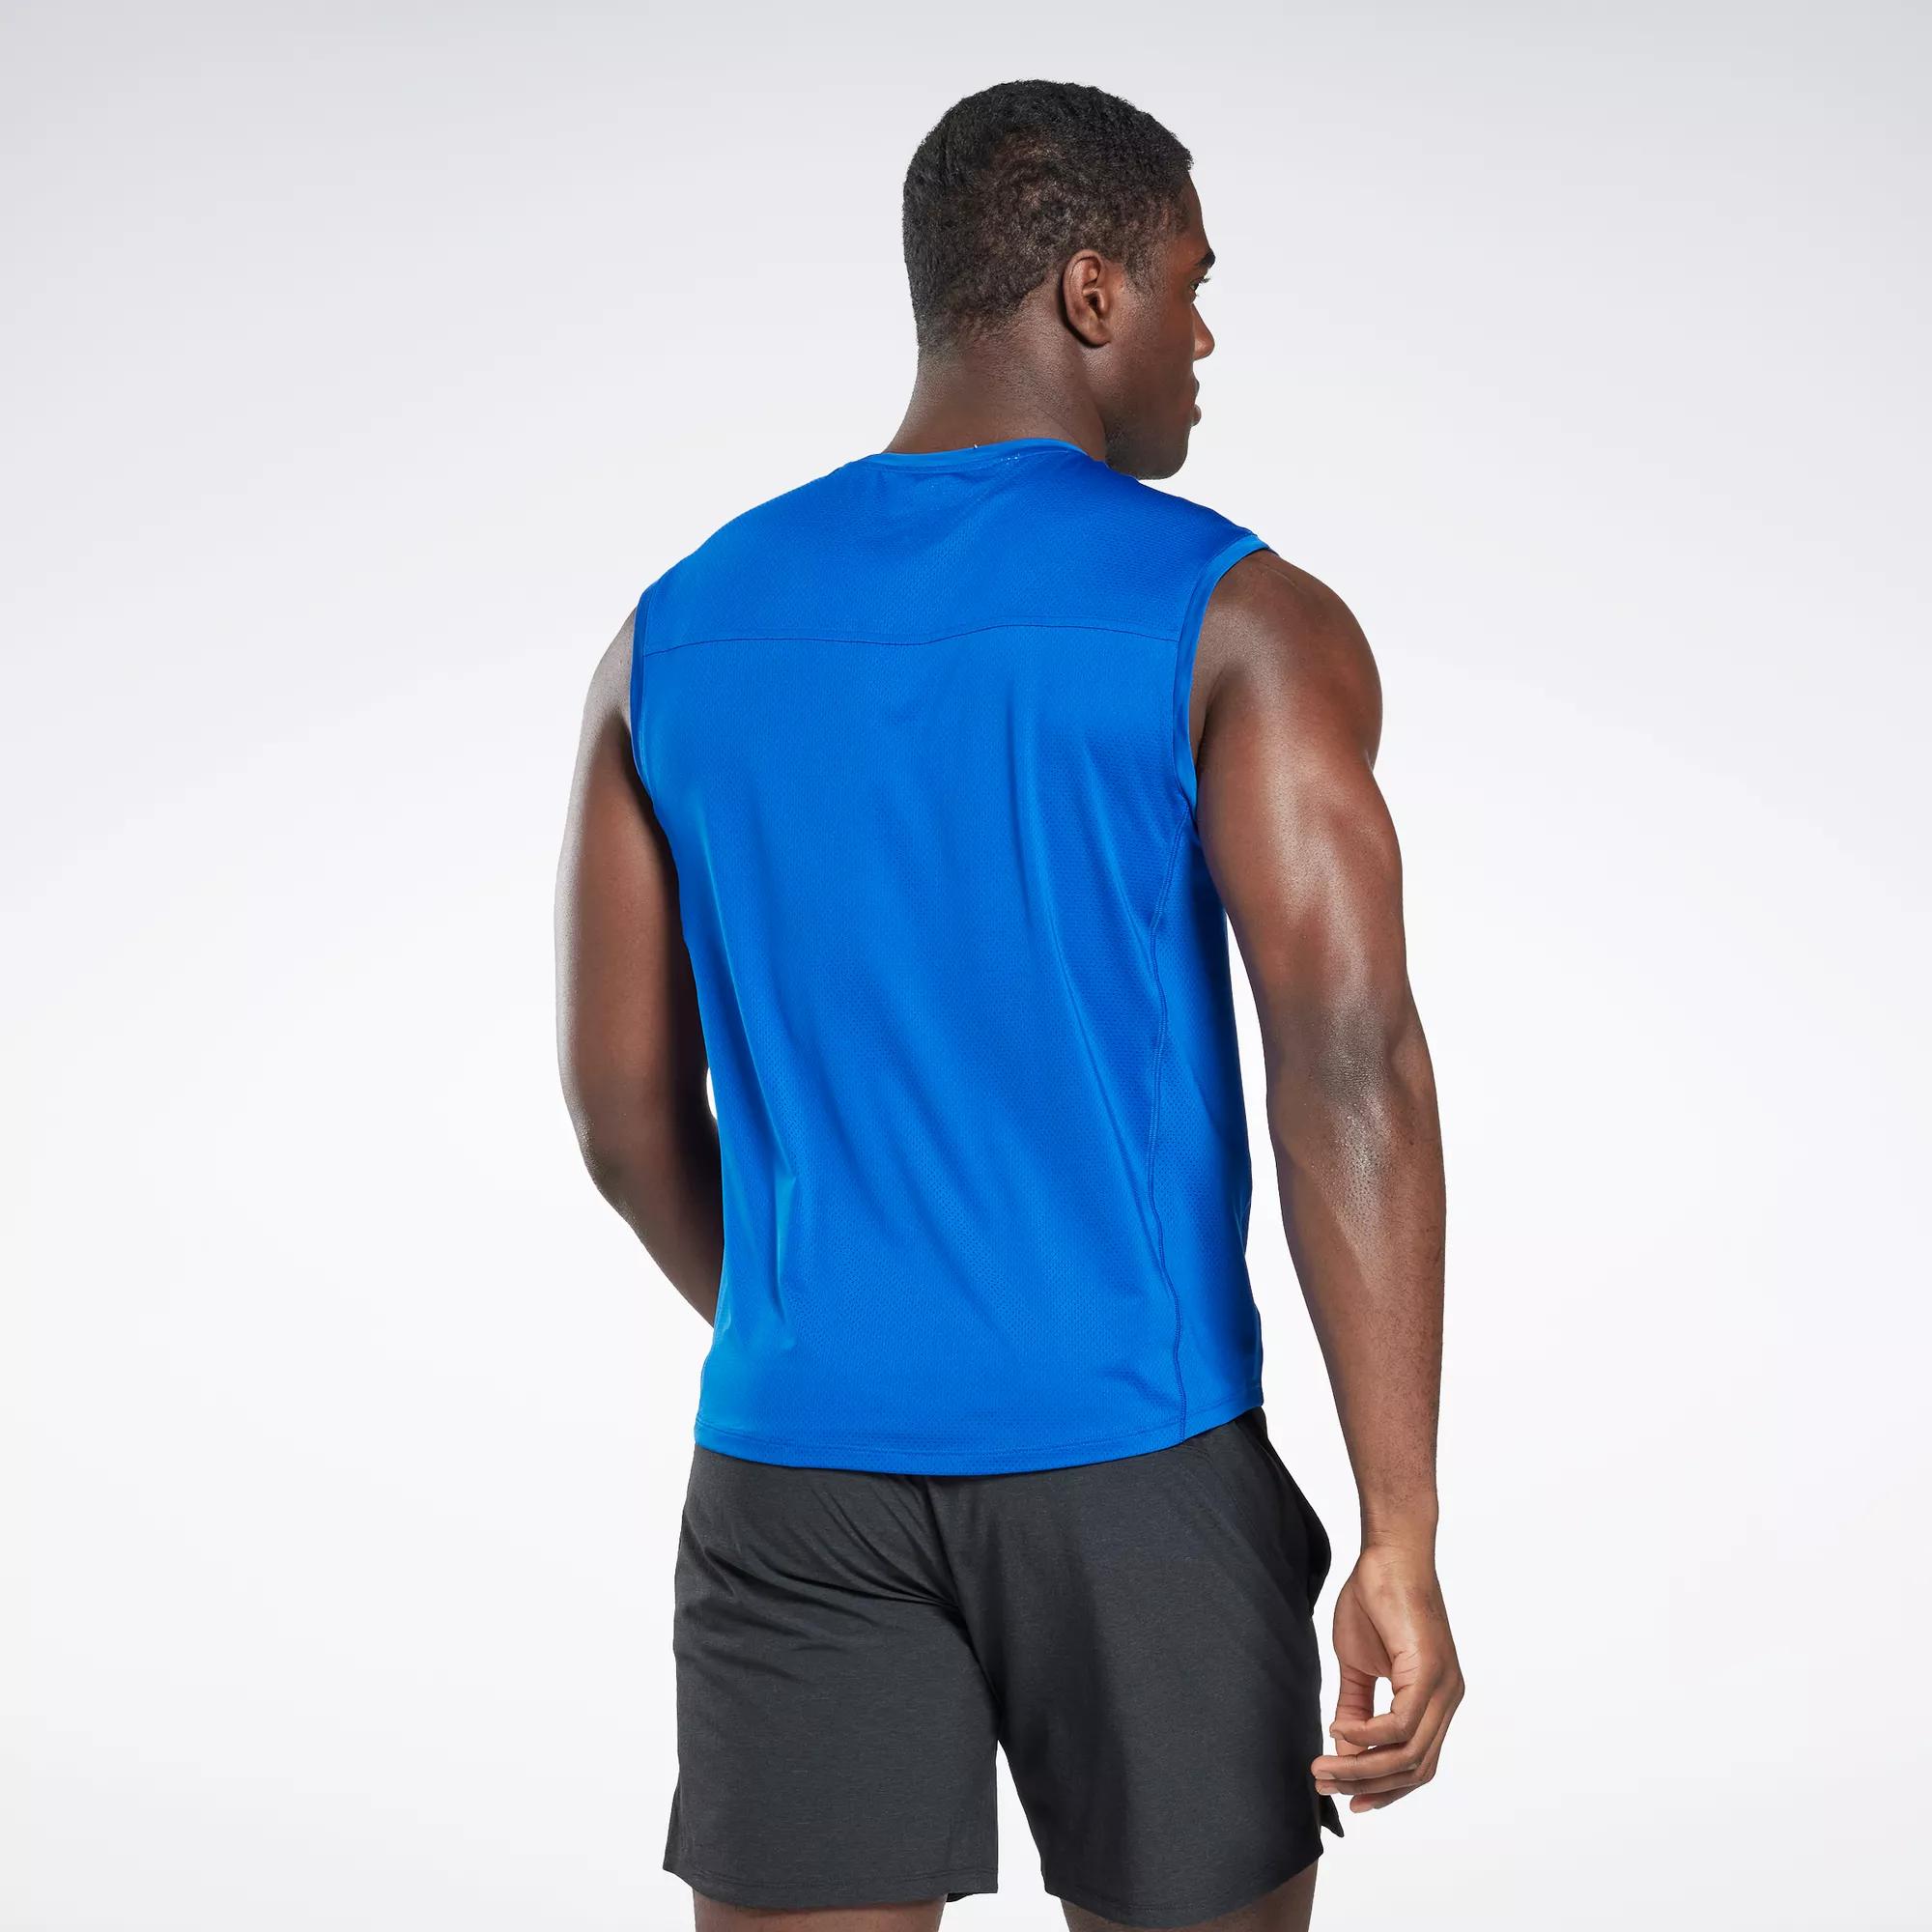 Reebok LES MILLS ACTIVCHILL Tank Top Workout Sleeveless Mens Gym Shirt Blue